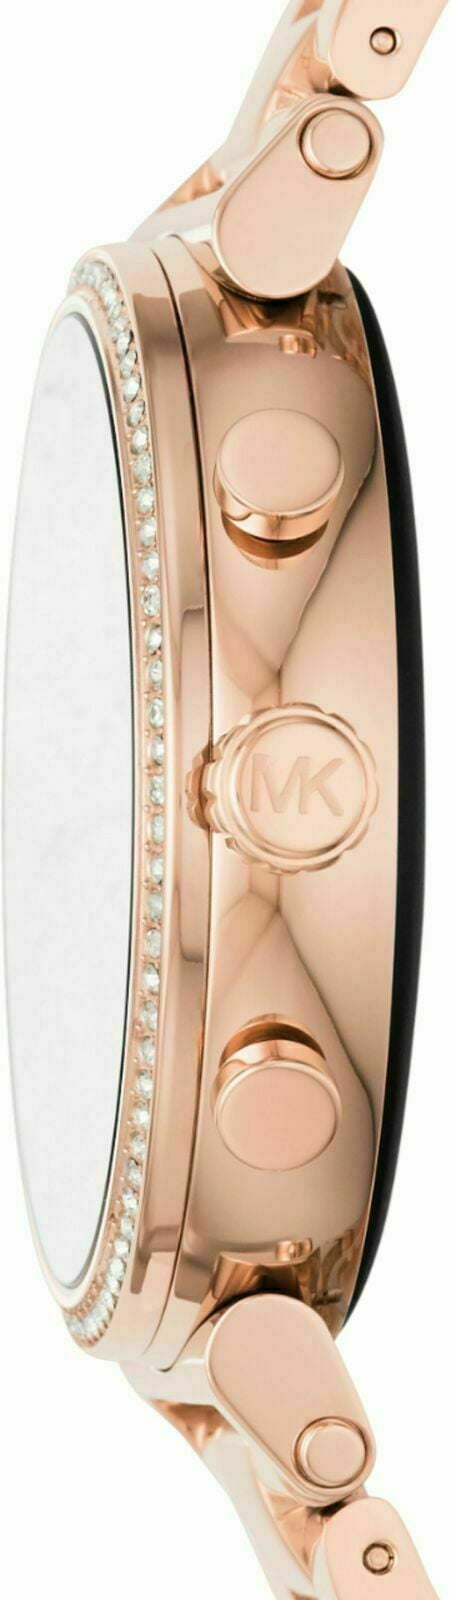 Ladies Michael Kors Access Runway Touchscreen Rose GoldTone Smartwatch  Gift Set MKT5054  REEDS Jewelers